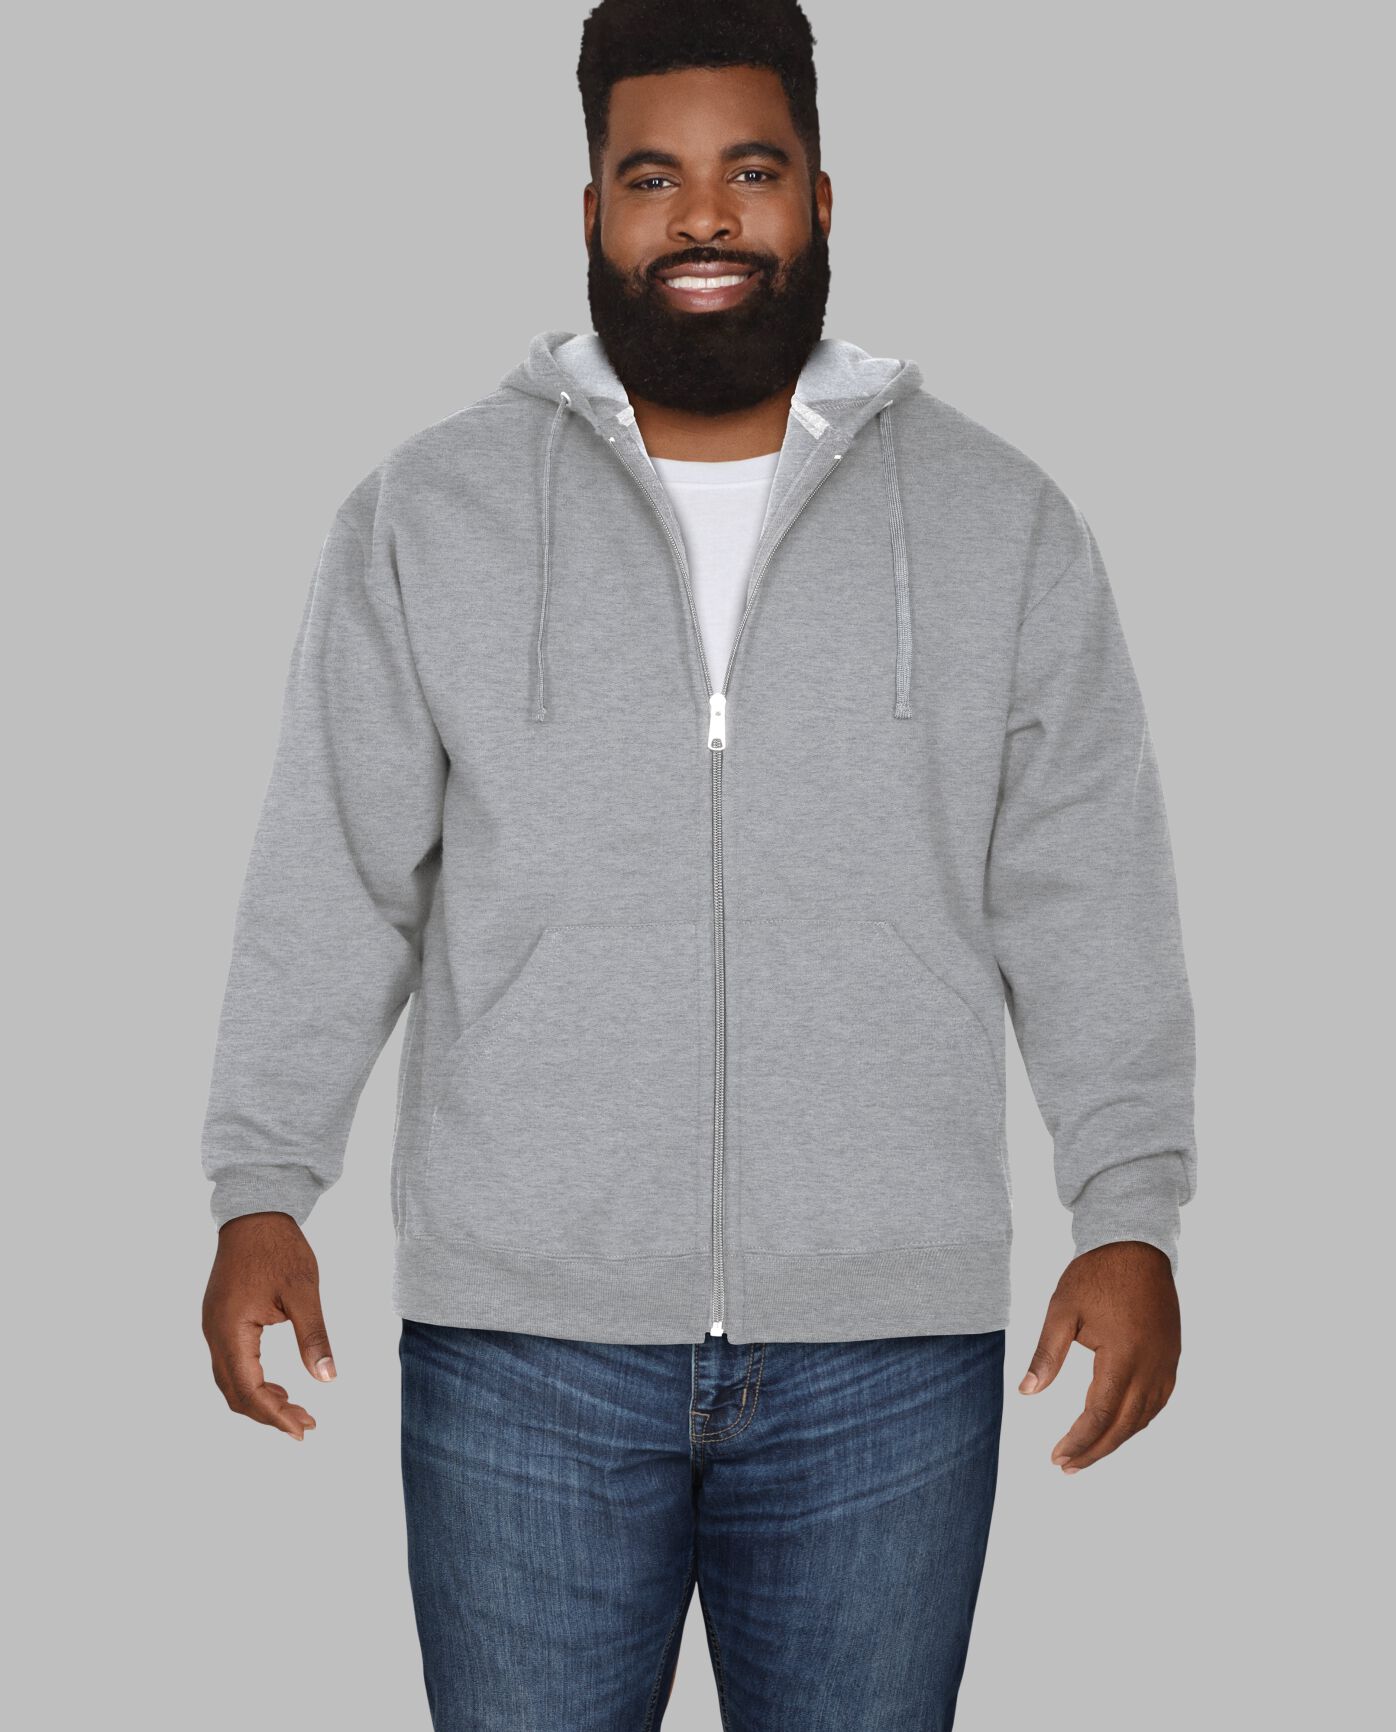 pot Over instelling kin Big Men's Eversoft® Fleece Full Zip Hoodie Sweatshirt